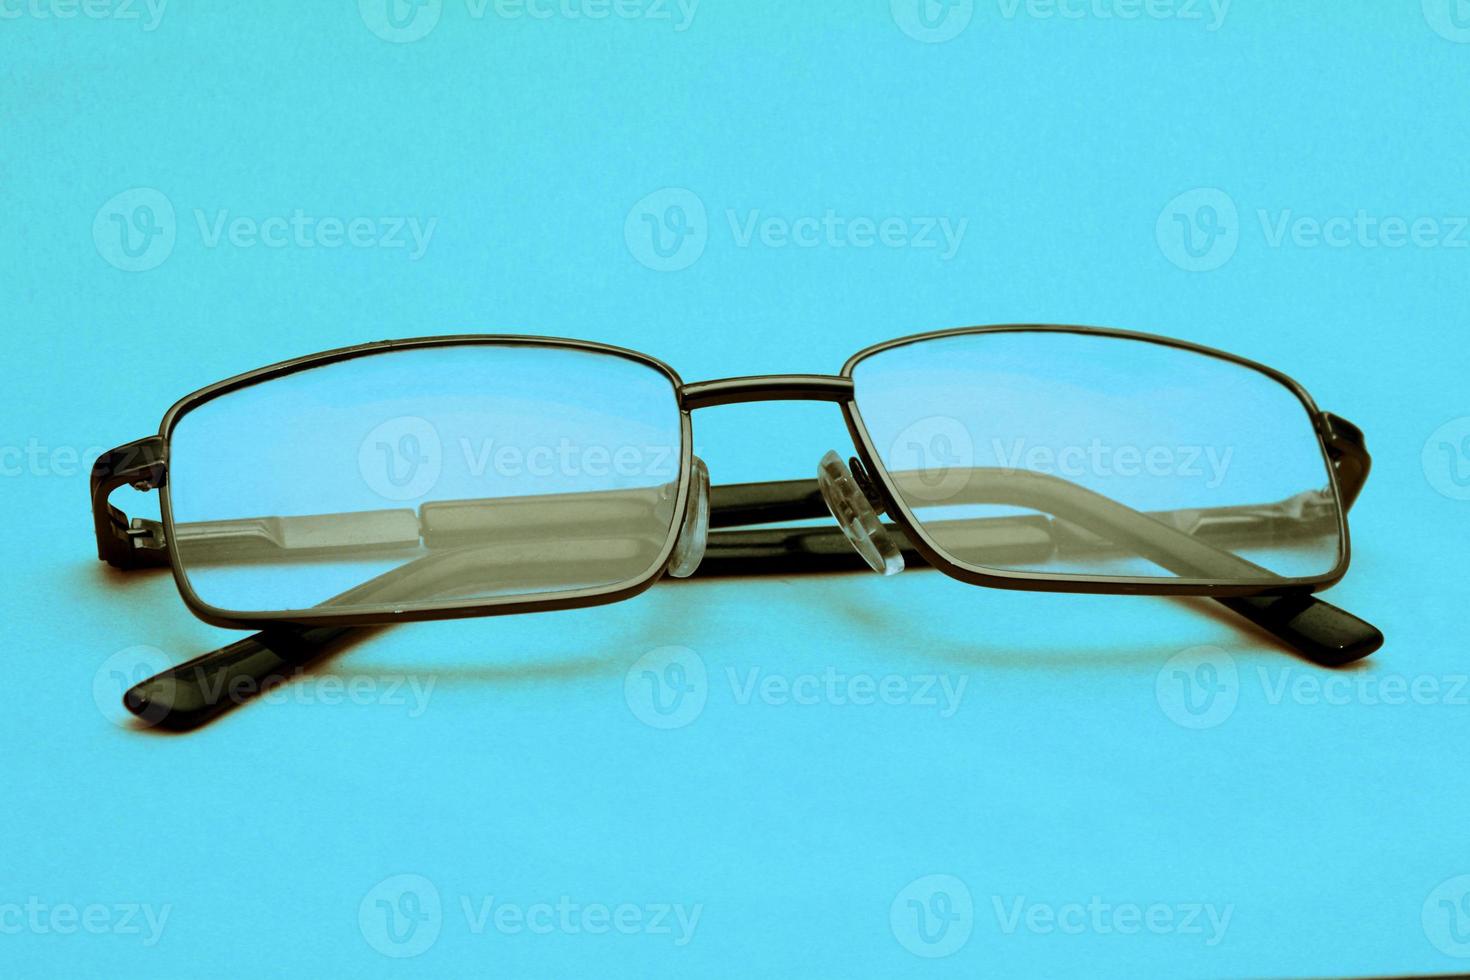 óculos em uma moldura preta sobre um fundo azul com espaço de cópia. dia mundial da visão. foto